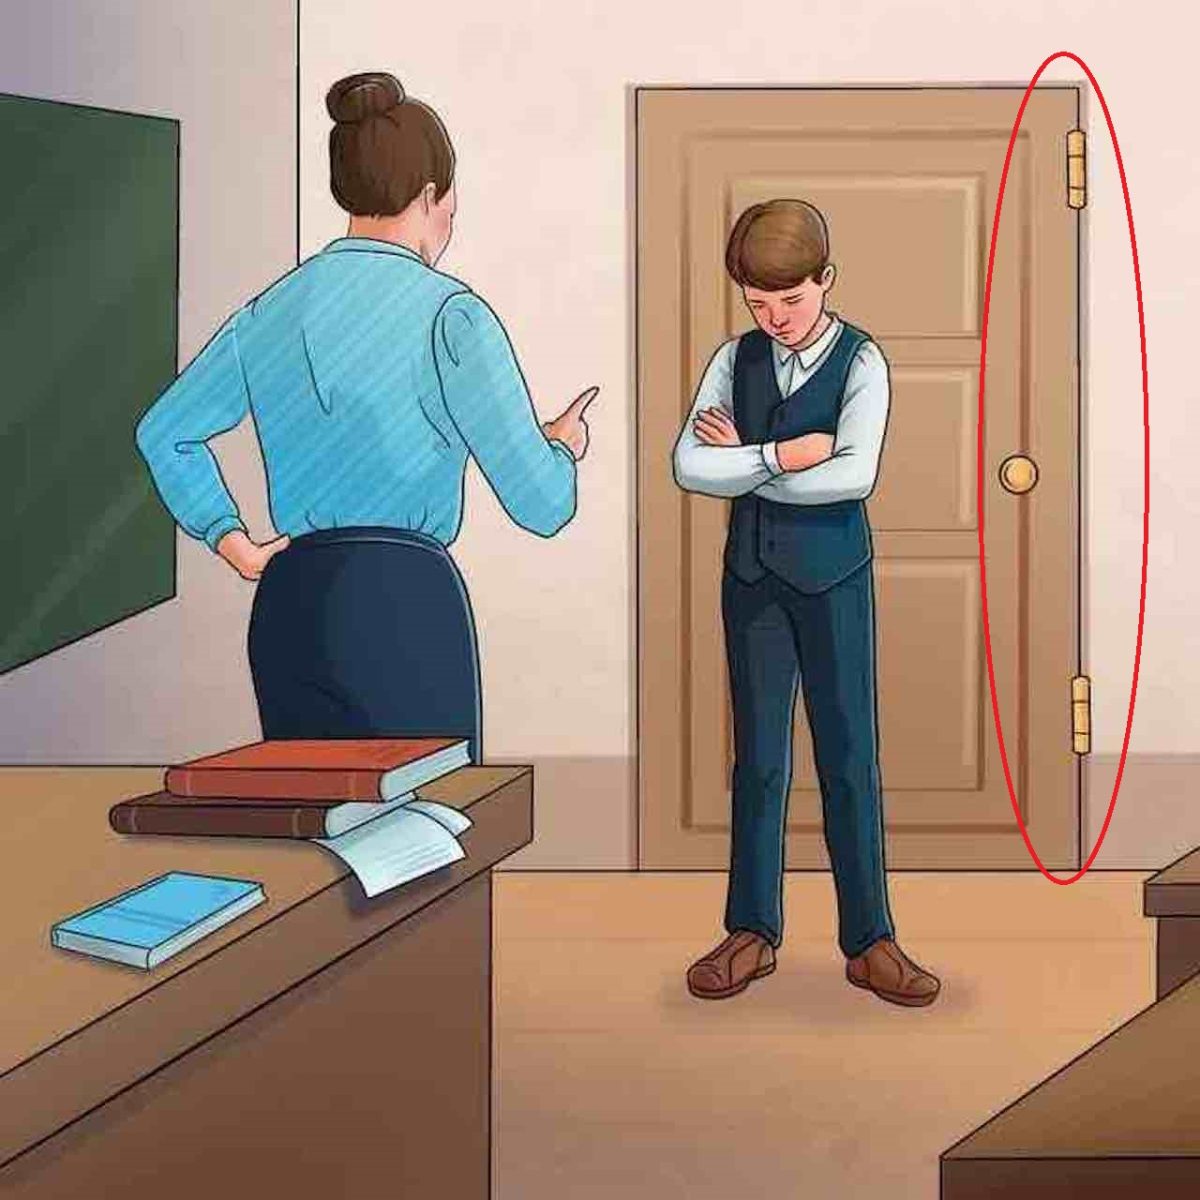 خطای تصویر دانش آموز و معلم-جواب خطای تصویر دانش آموز و معلم